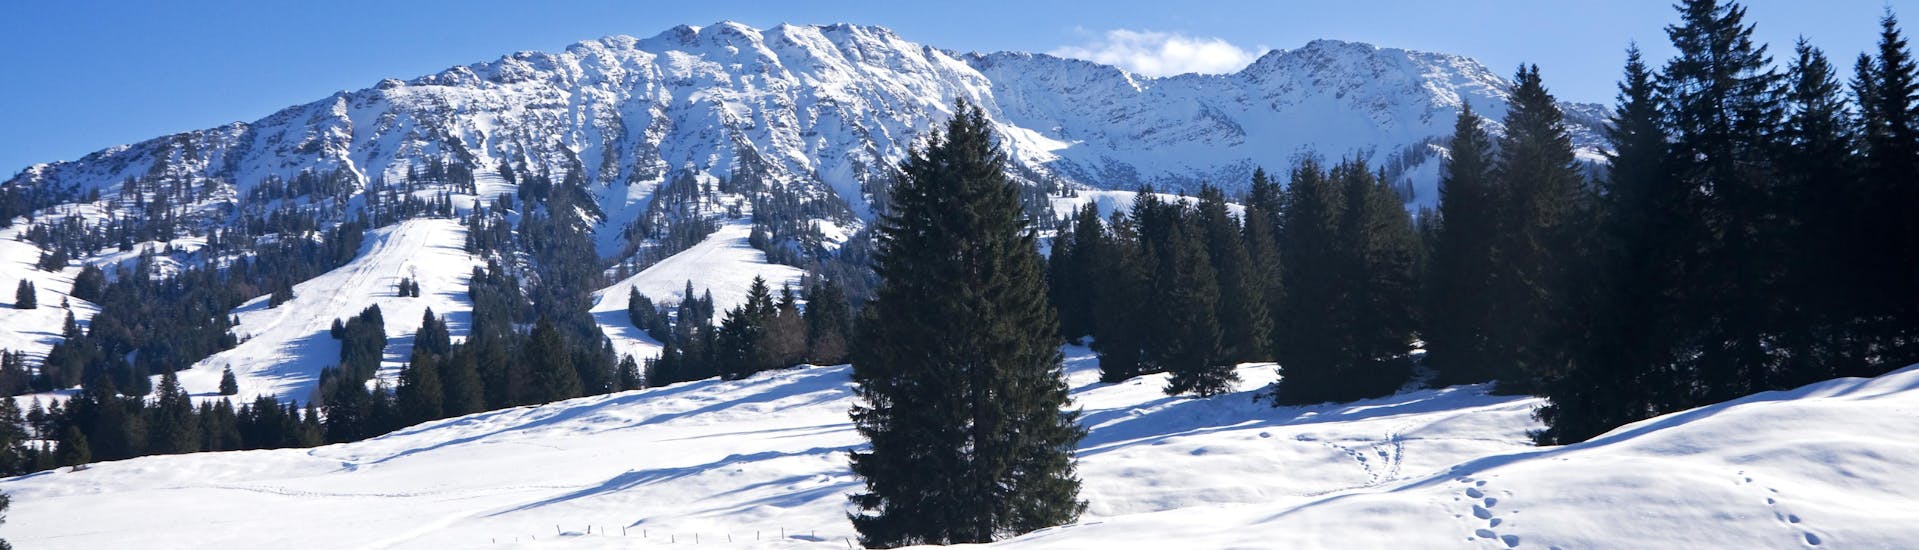 Ausblick auf die sonnige Berglandschaft beim Skifahren lernen mit den Skischulen in Oberjoch.